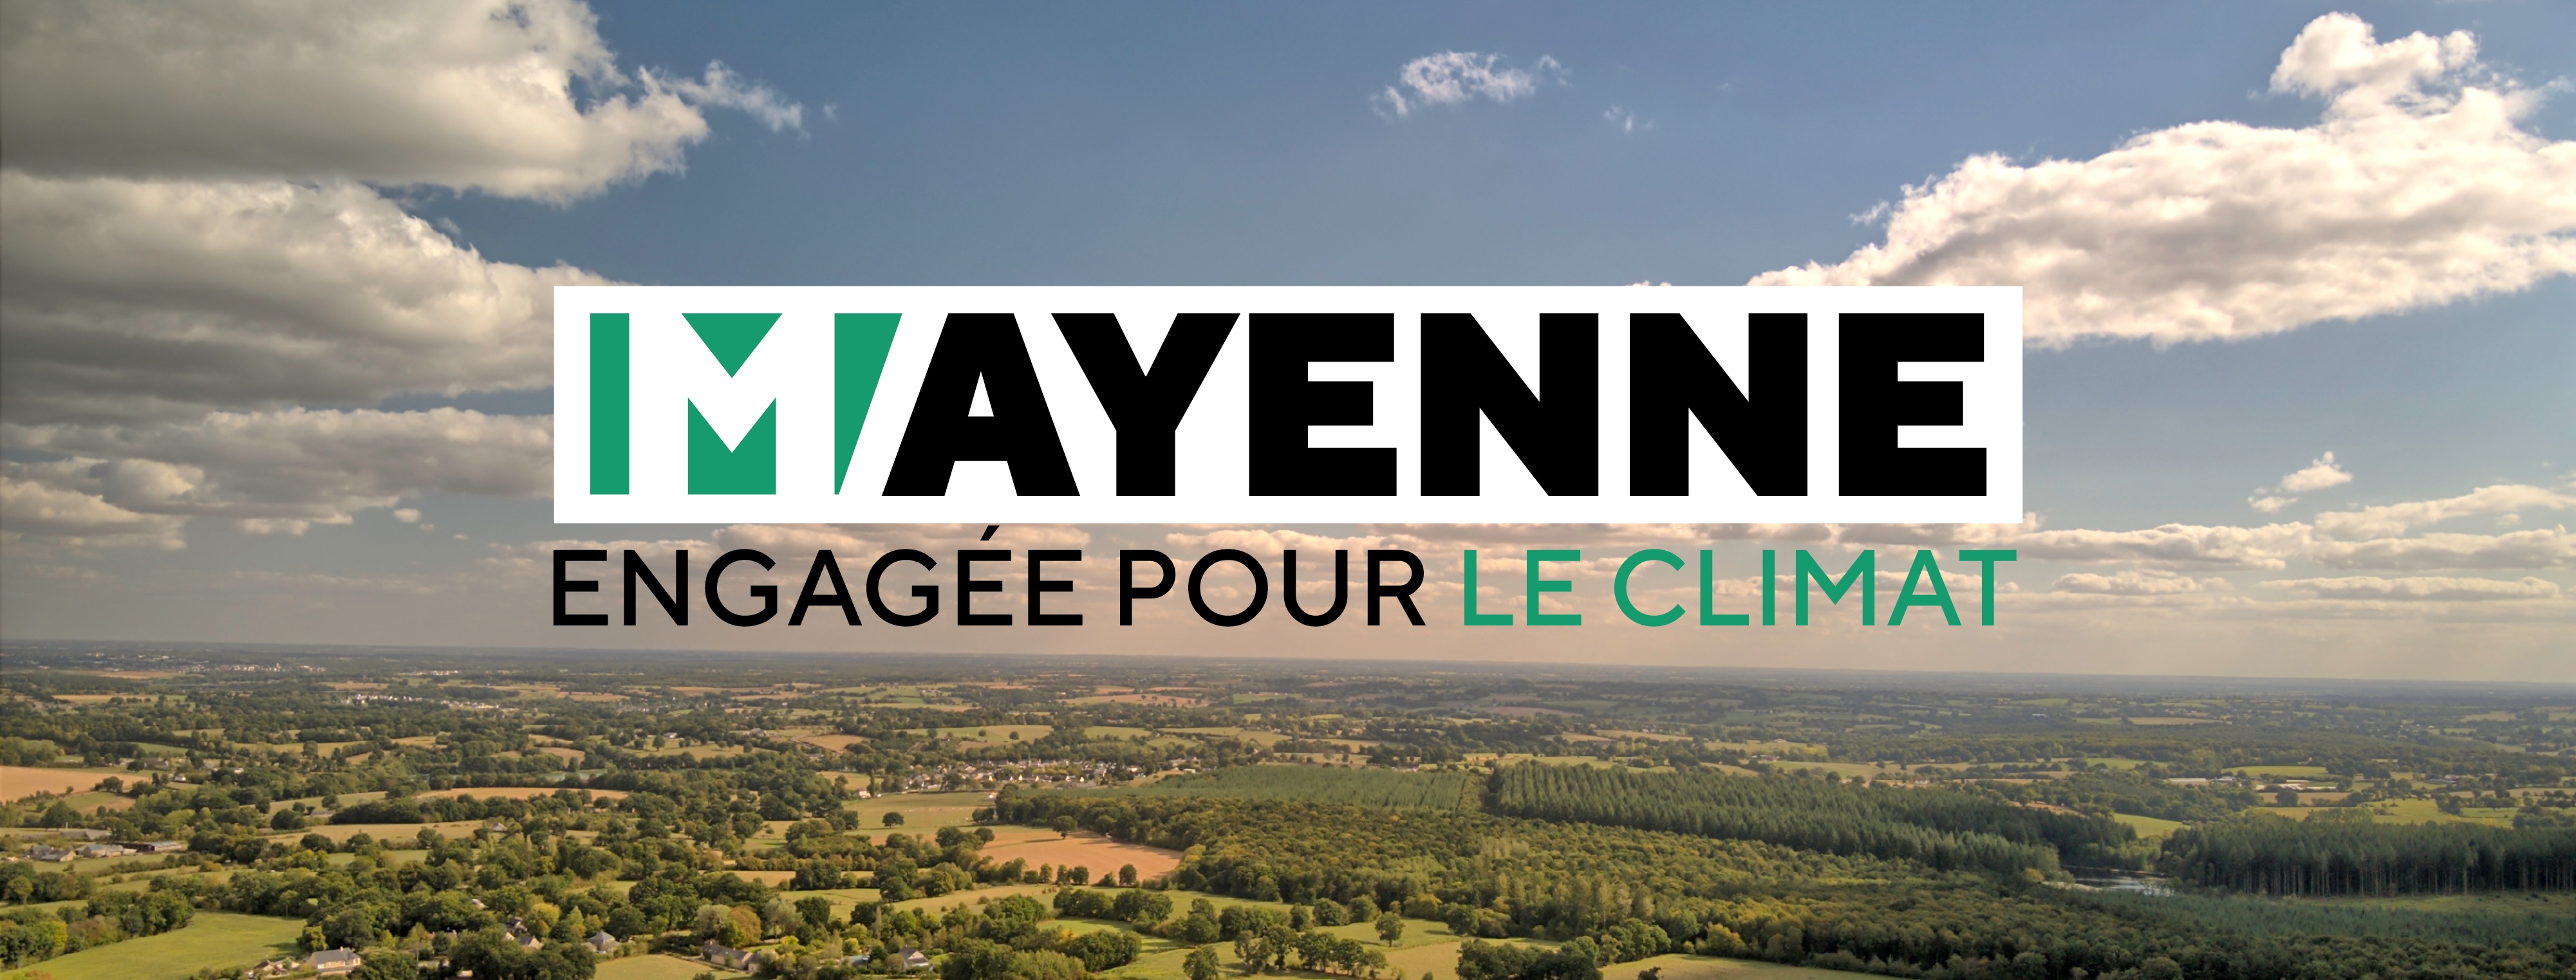 La Mayenne engagée pour le climat